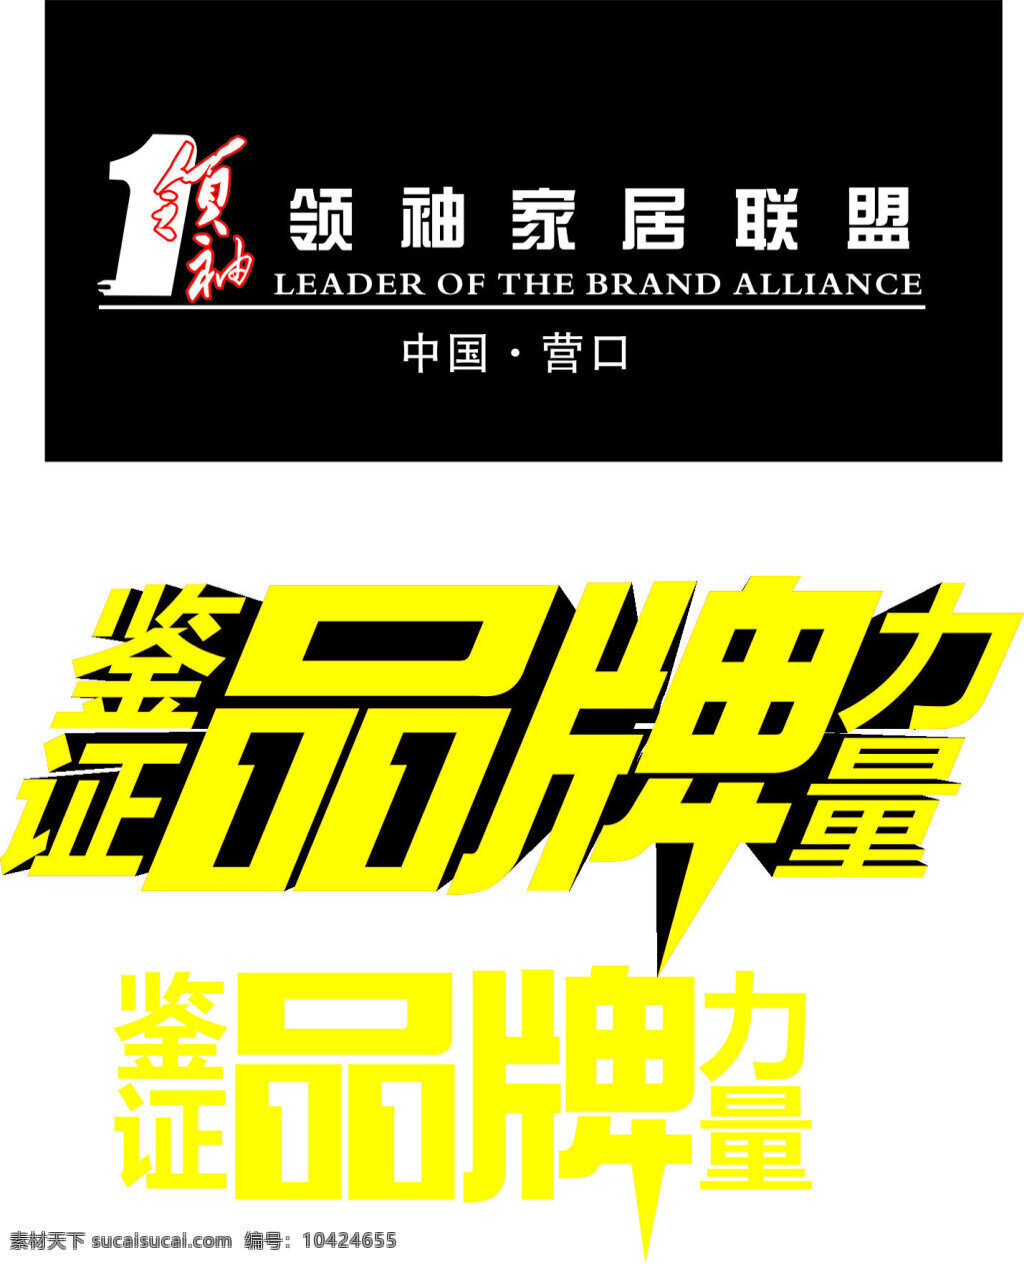 领袖 家居 联盟 鉴证 品牌 力量 品牌力量 logo 标志